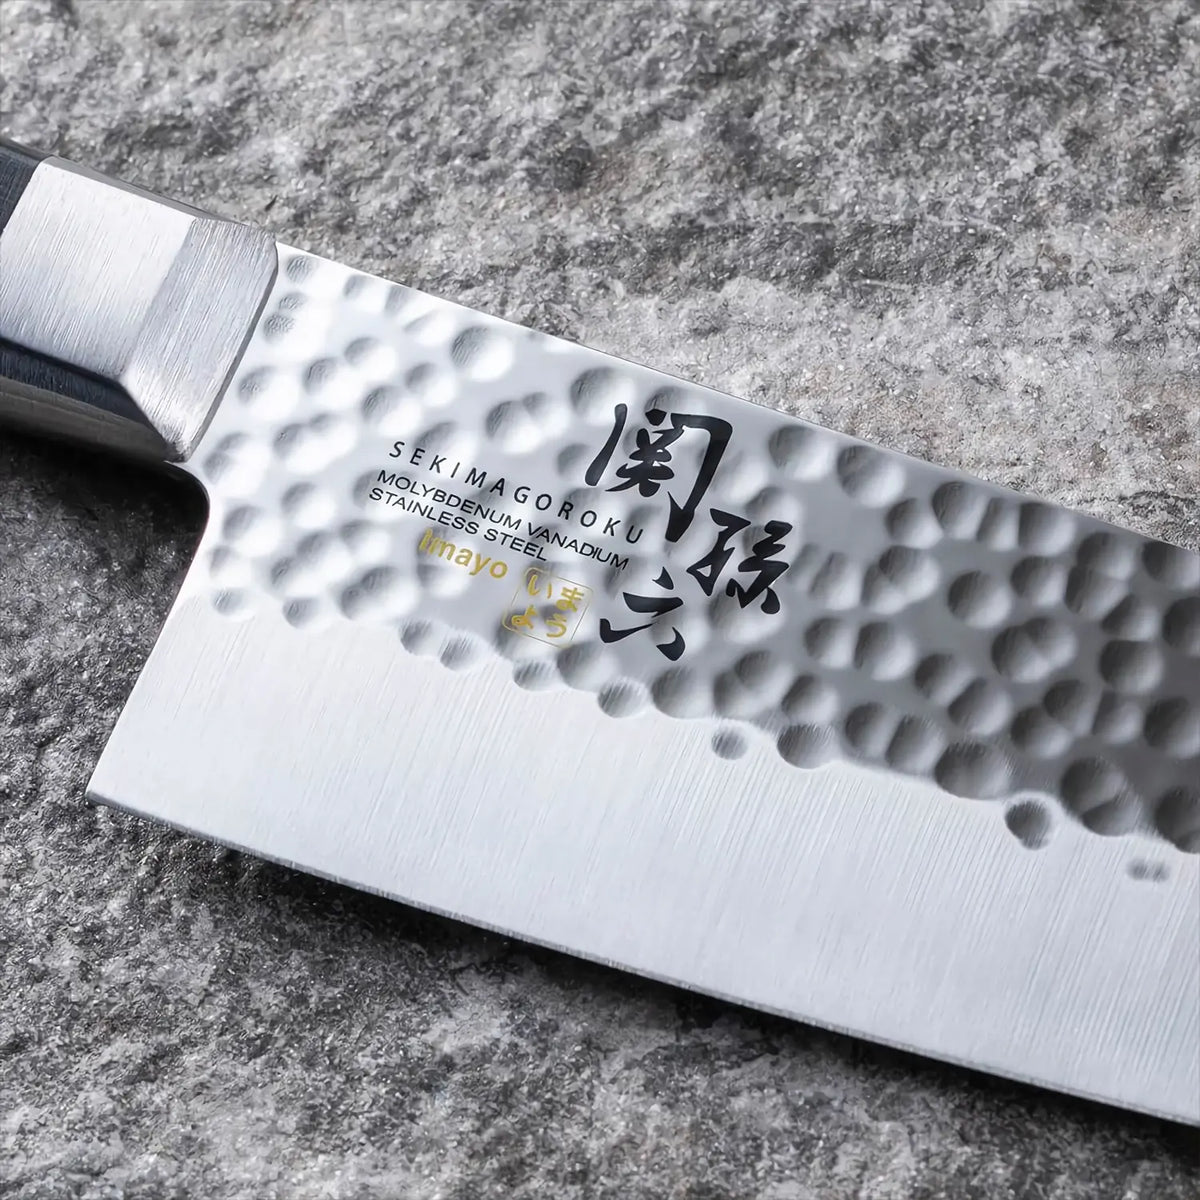 3-Piece Japanese Sushi Chef Knife Santoku Knife Set - China Sushi Knife and Sashimi  Knife price